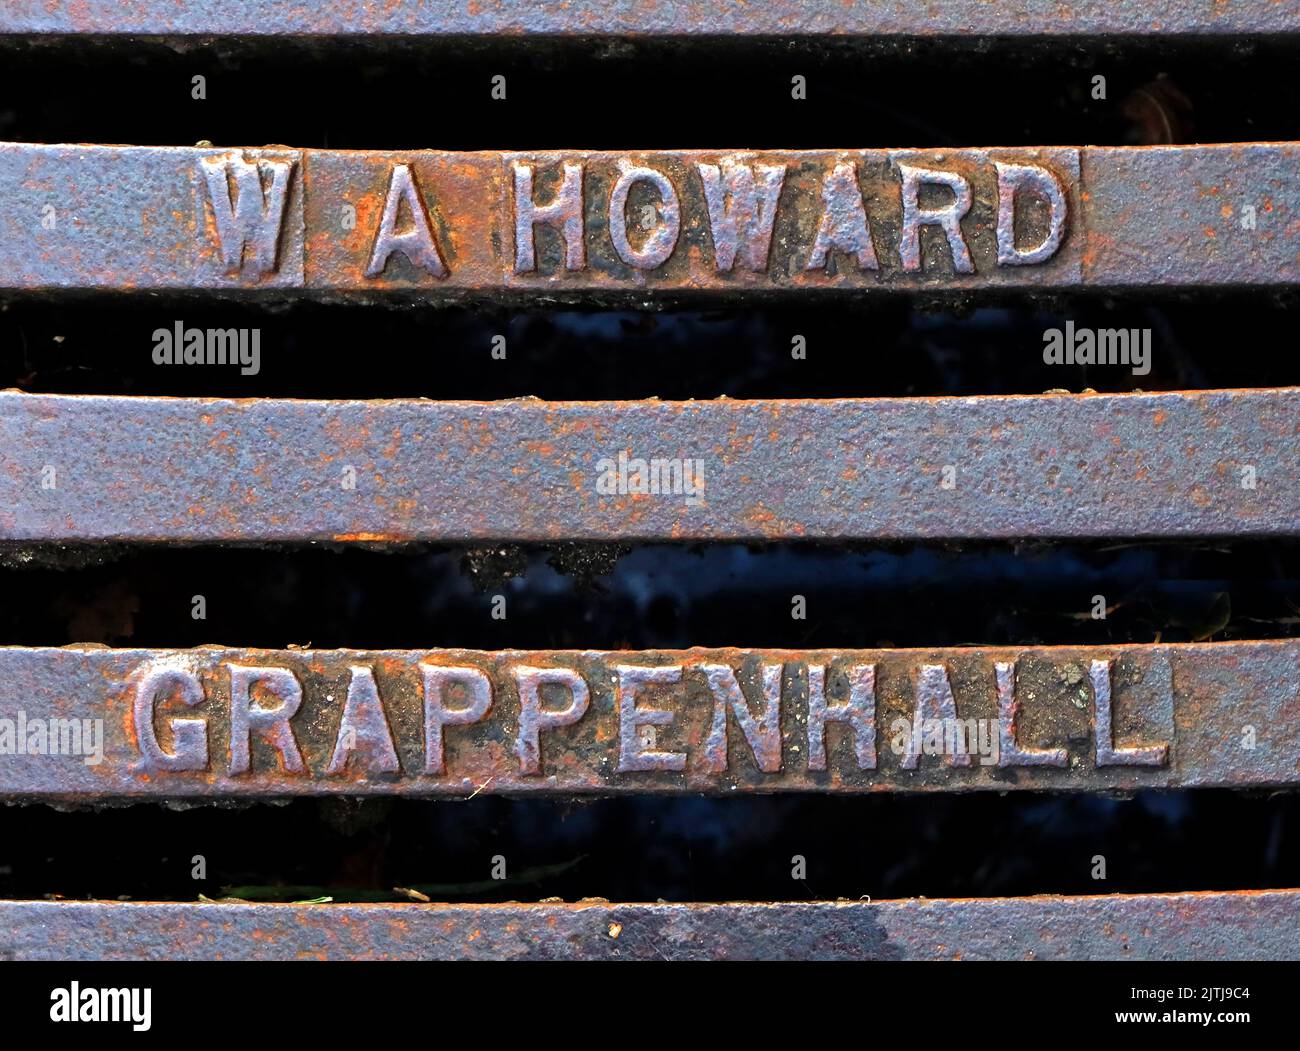 WA Howard, grille en fonte gaufrée de Grappenhall, Warrington, Cheshire, Angleterre, Royaume-Uni, WA4 2SJ Banque D'Images